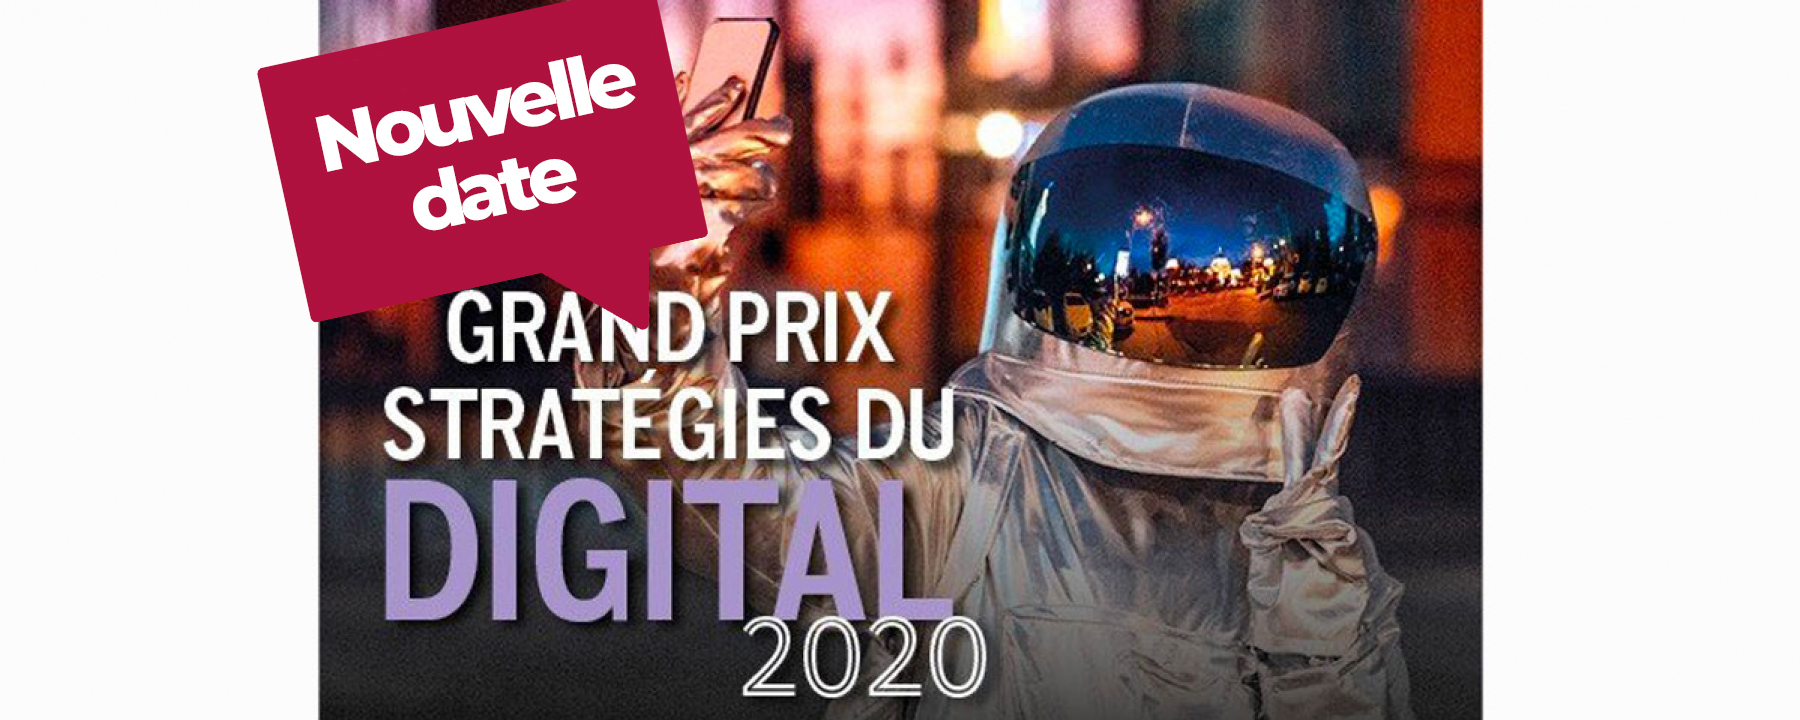 Grand Prix Stratégies du Digital, un événement organisé par Stratégies